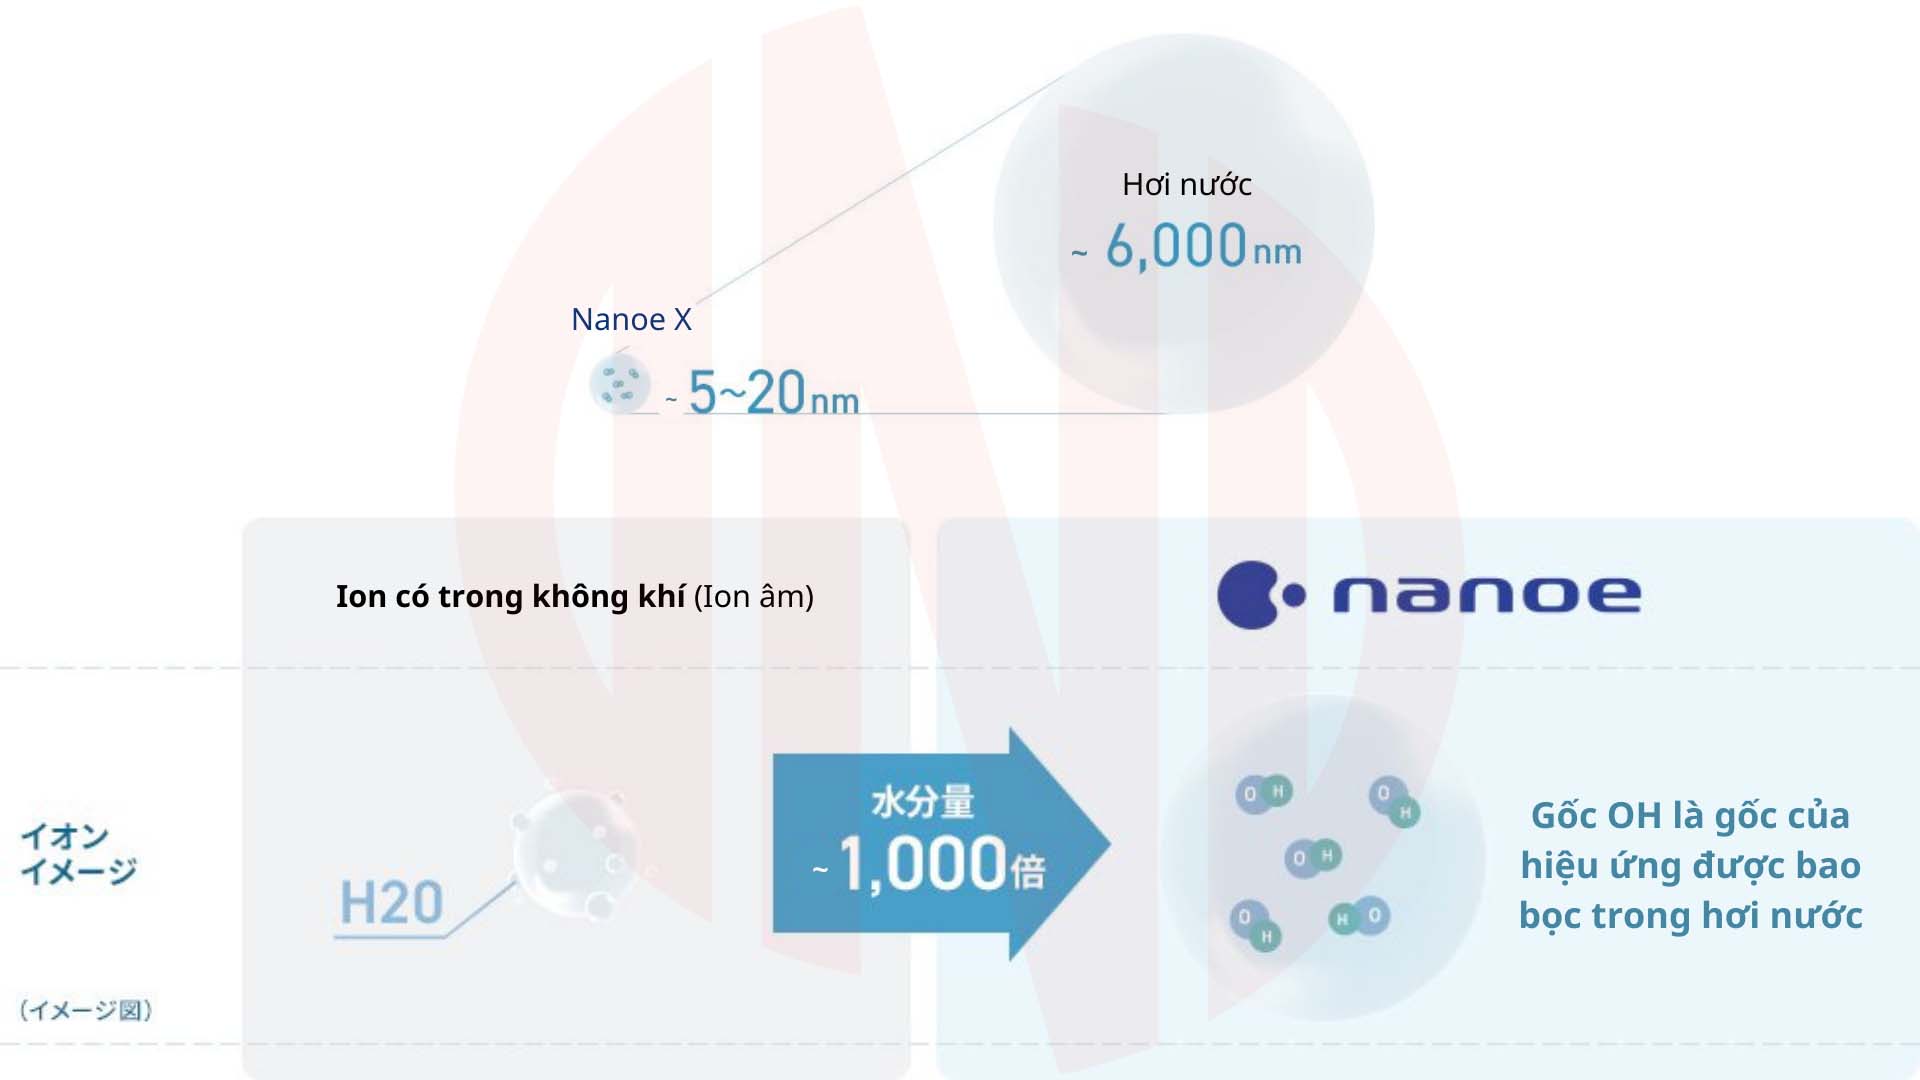 Nanoe - Nanoe X là gì?